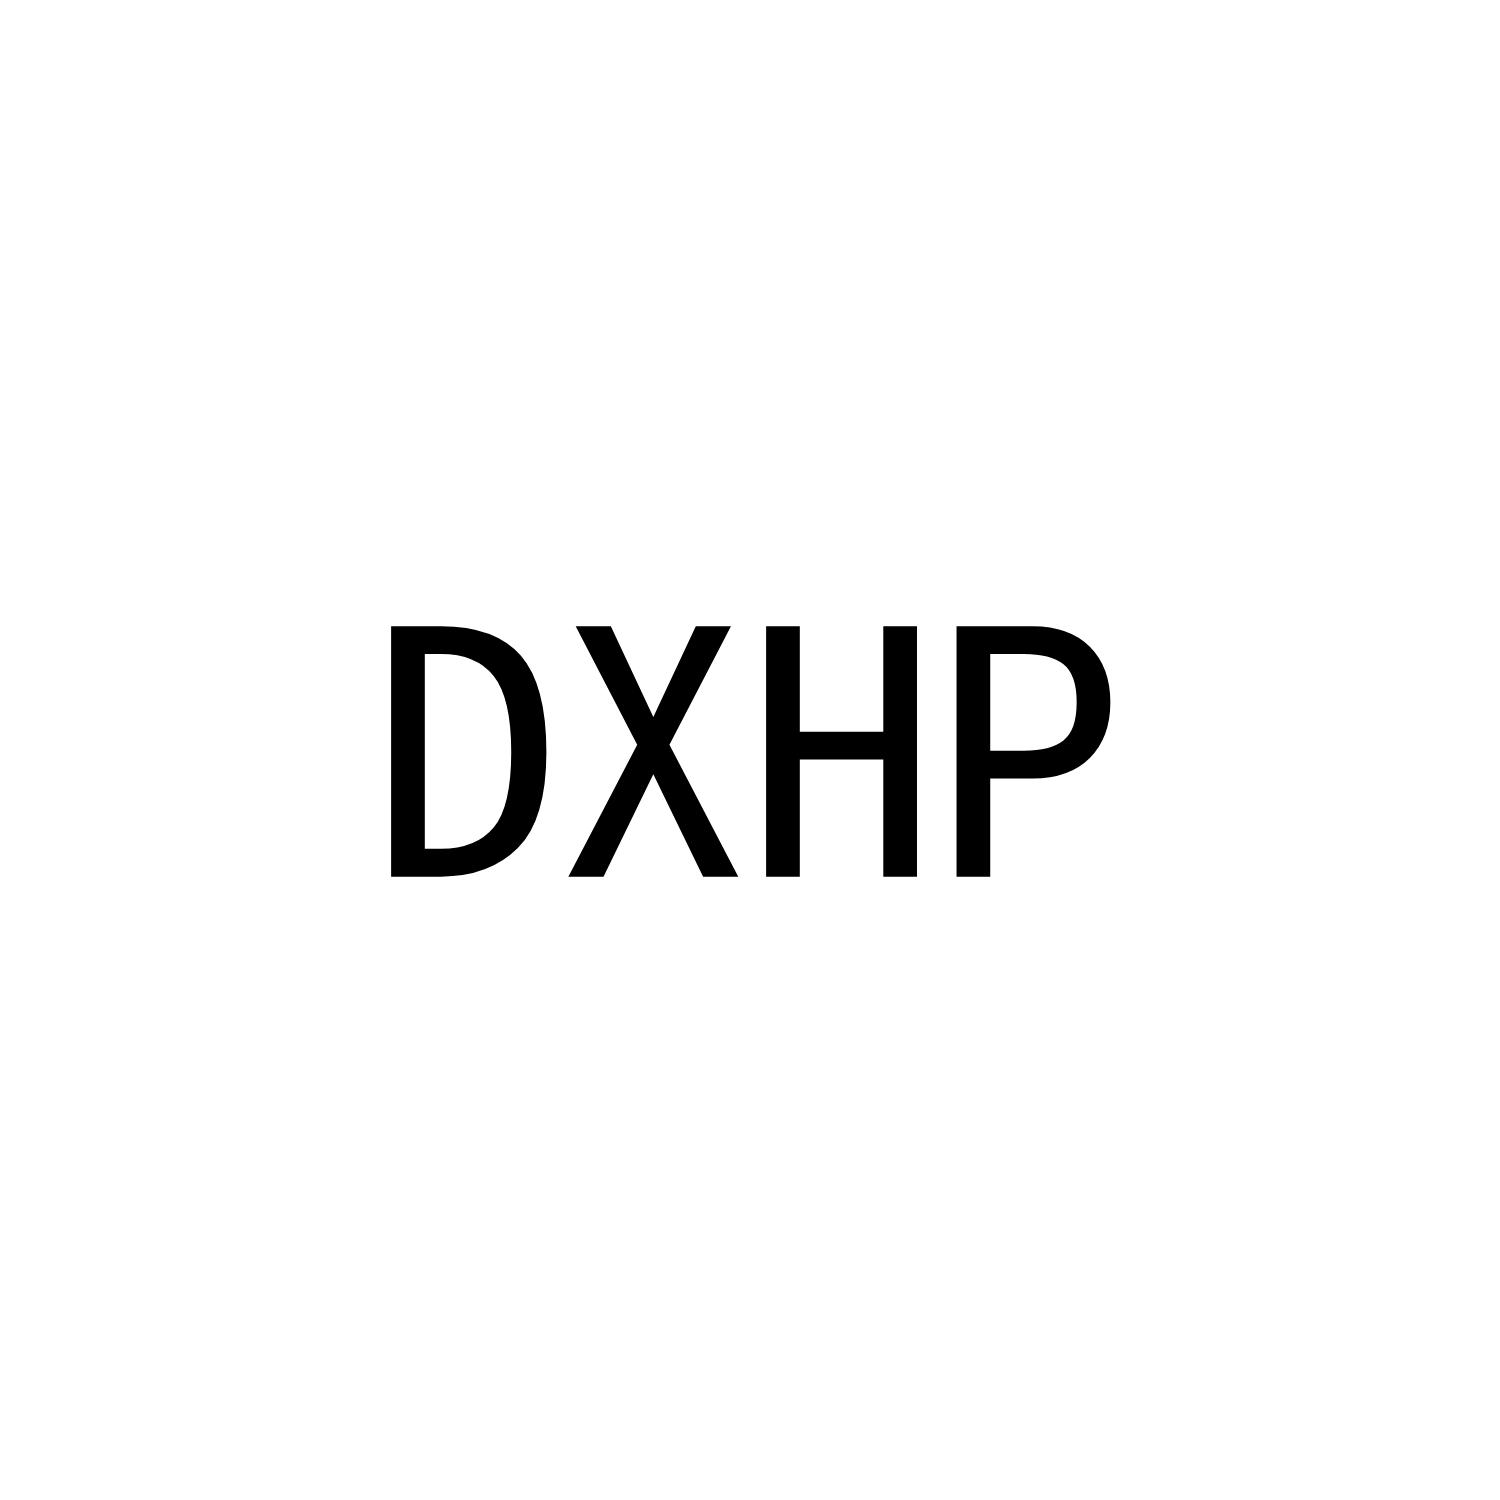 DXHP